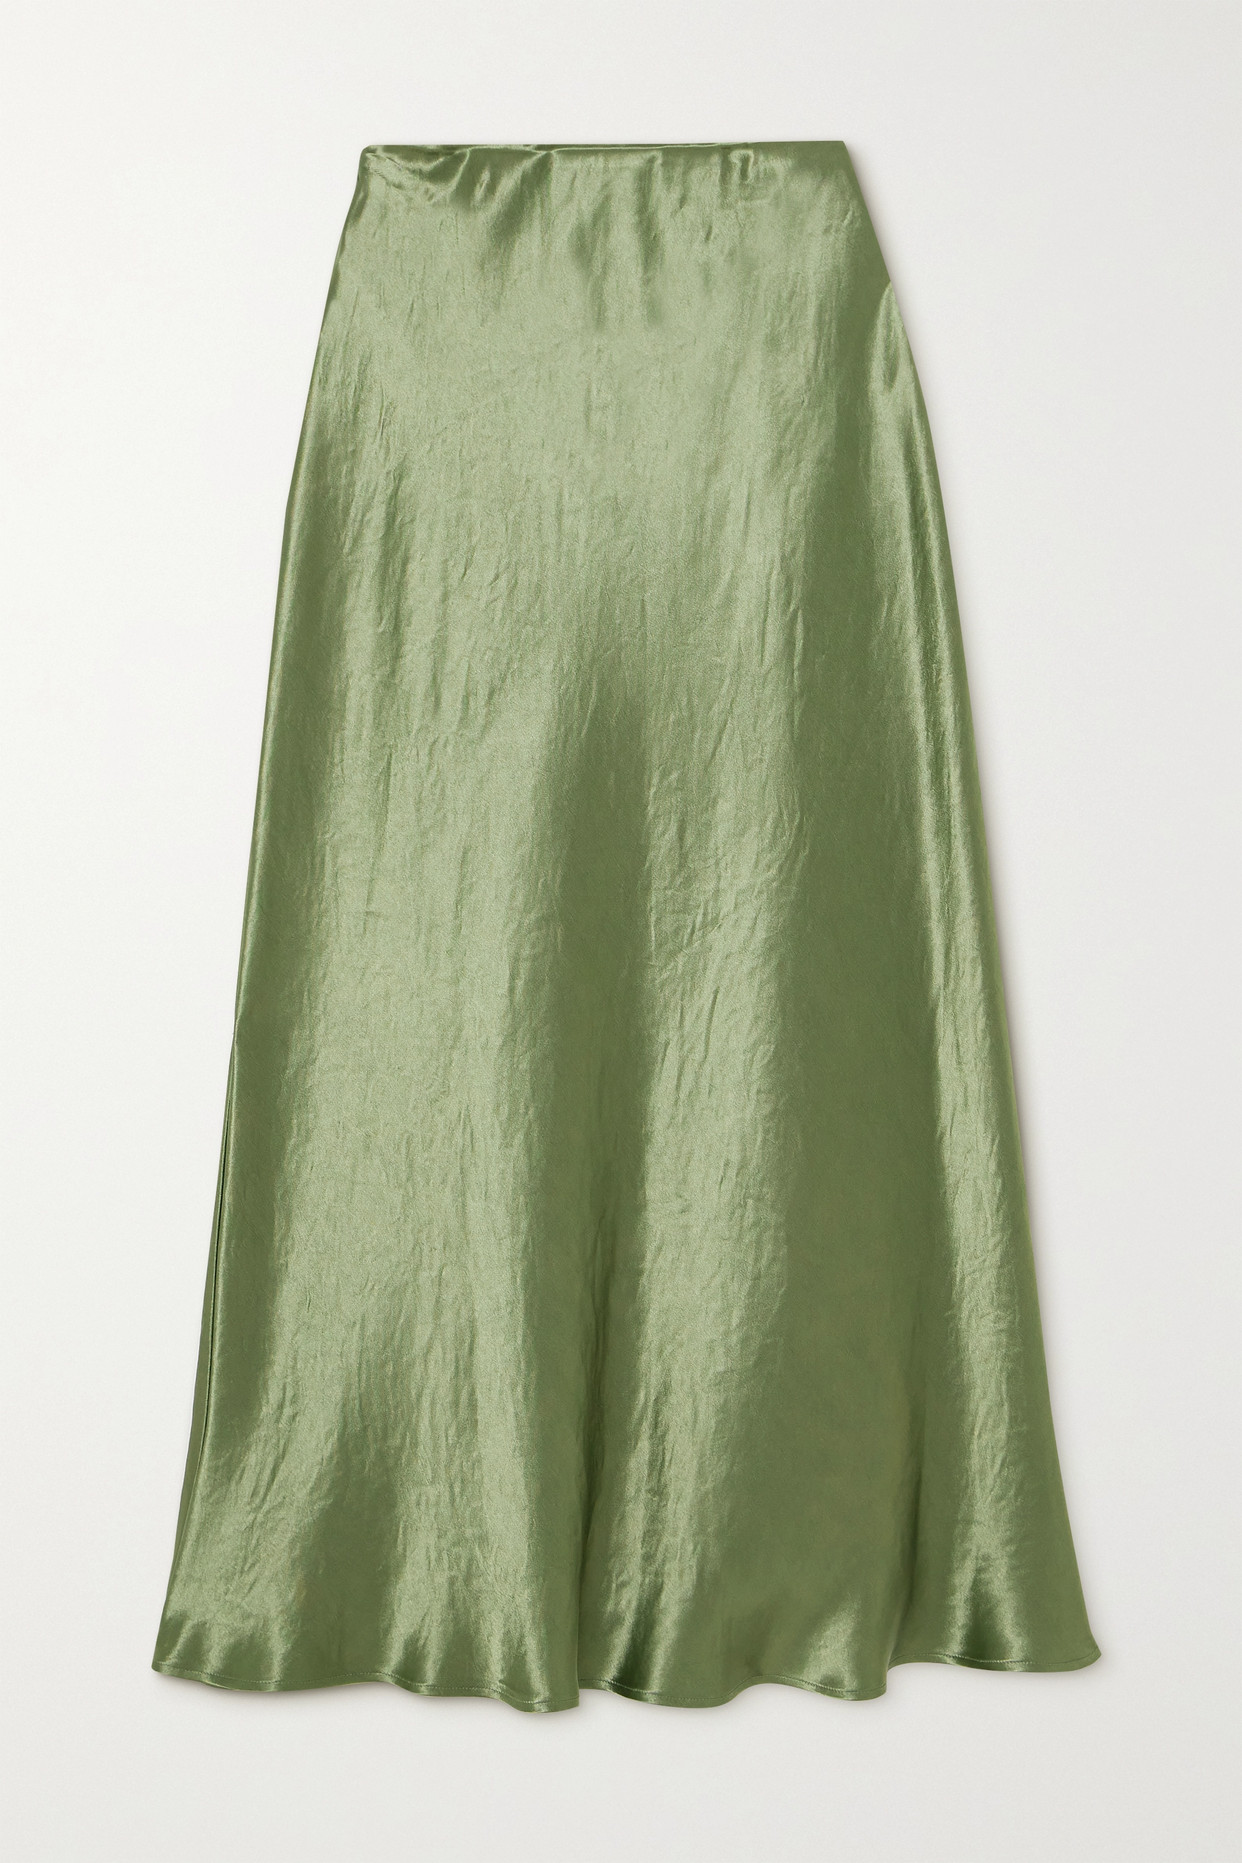 Crinkled-Satin Midi Skirt in sage green